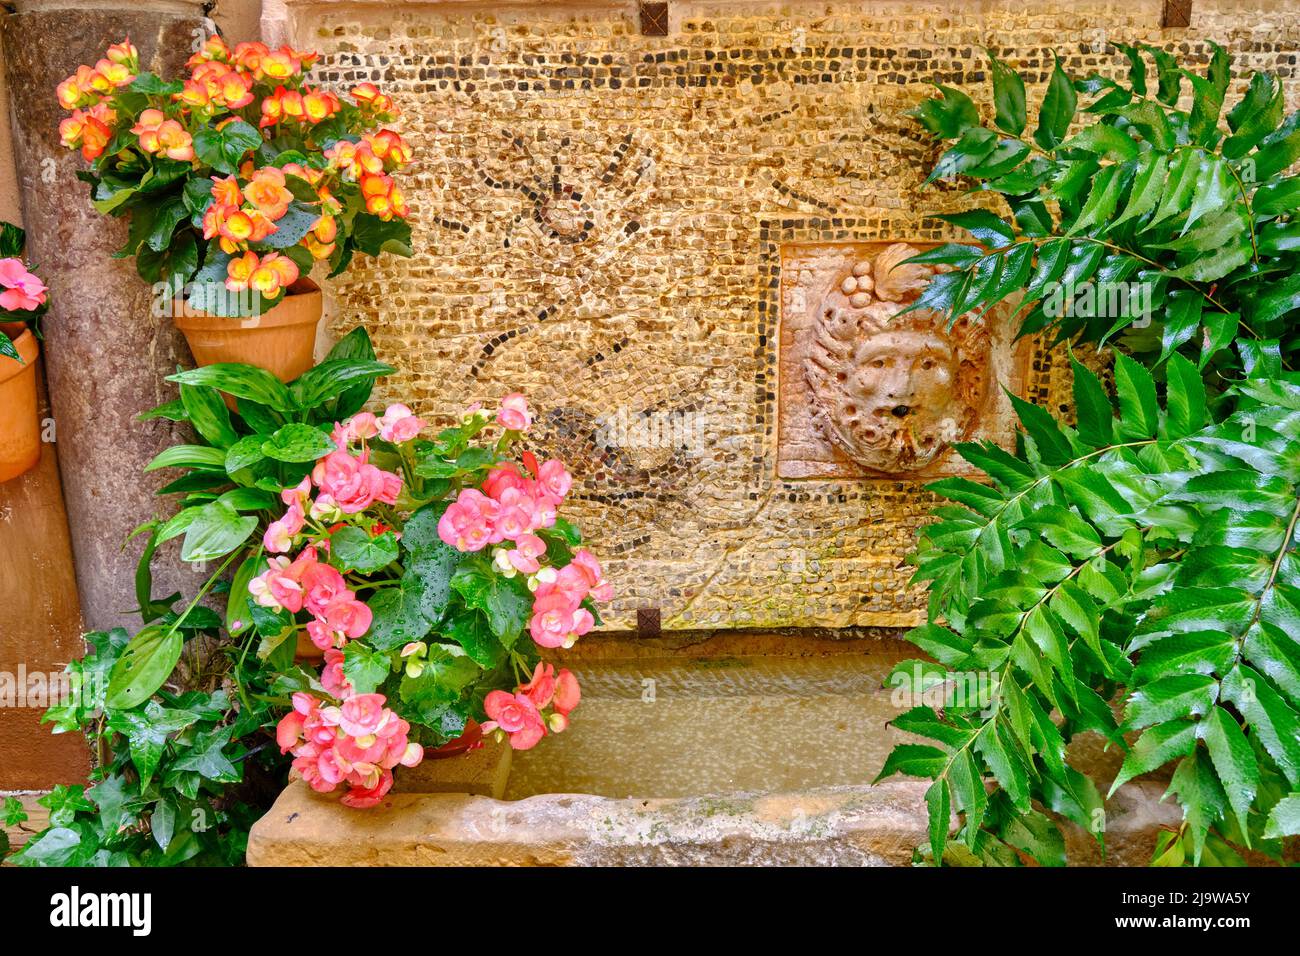 Detalle de un tradicional Patio de Córdoba, un patio lleno de flores y frescura. Andalucía, España Foto de stock